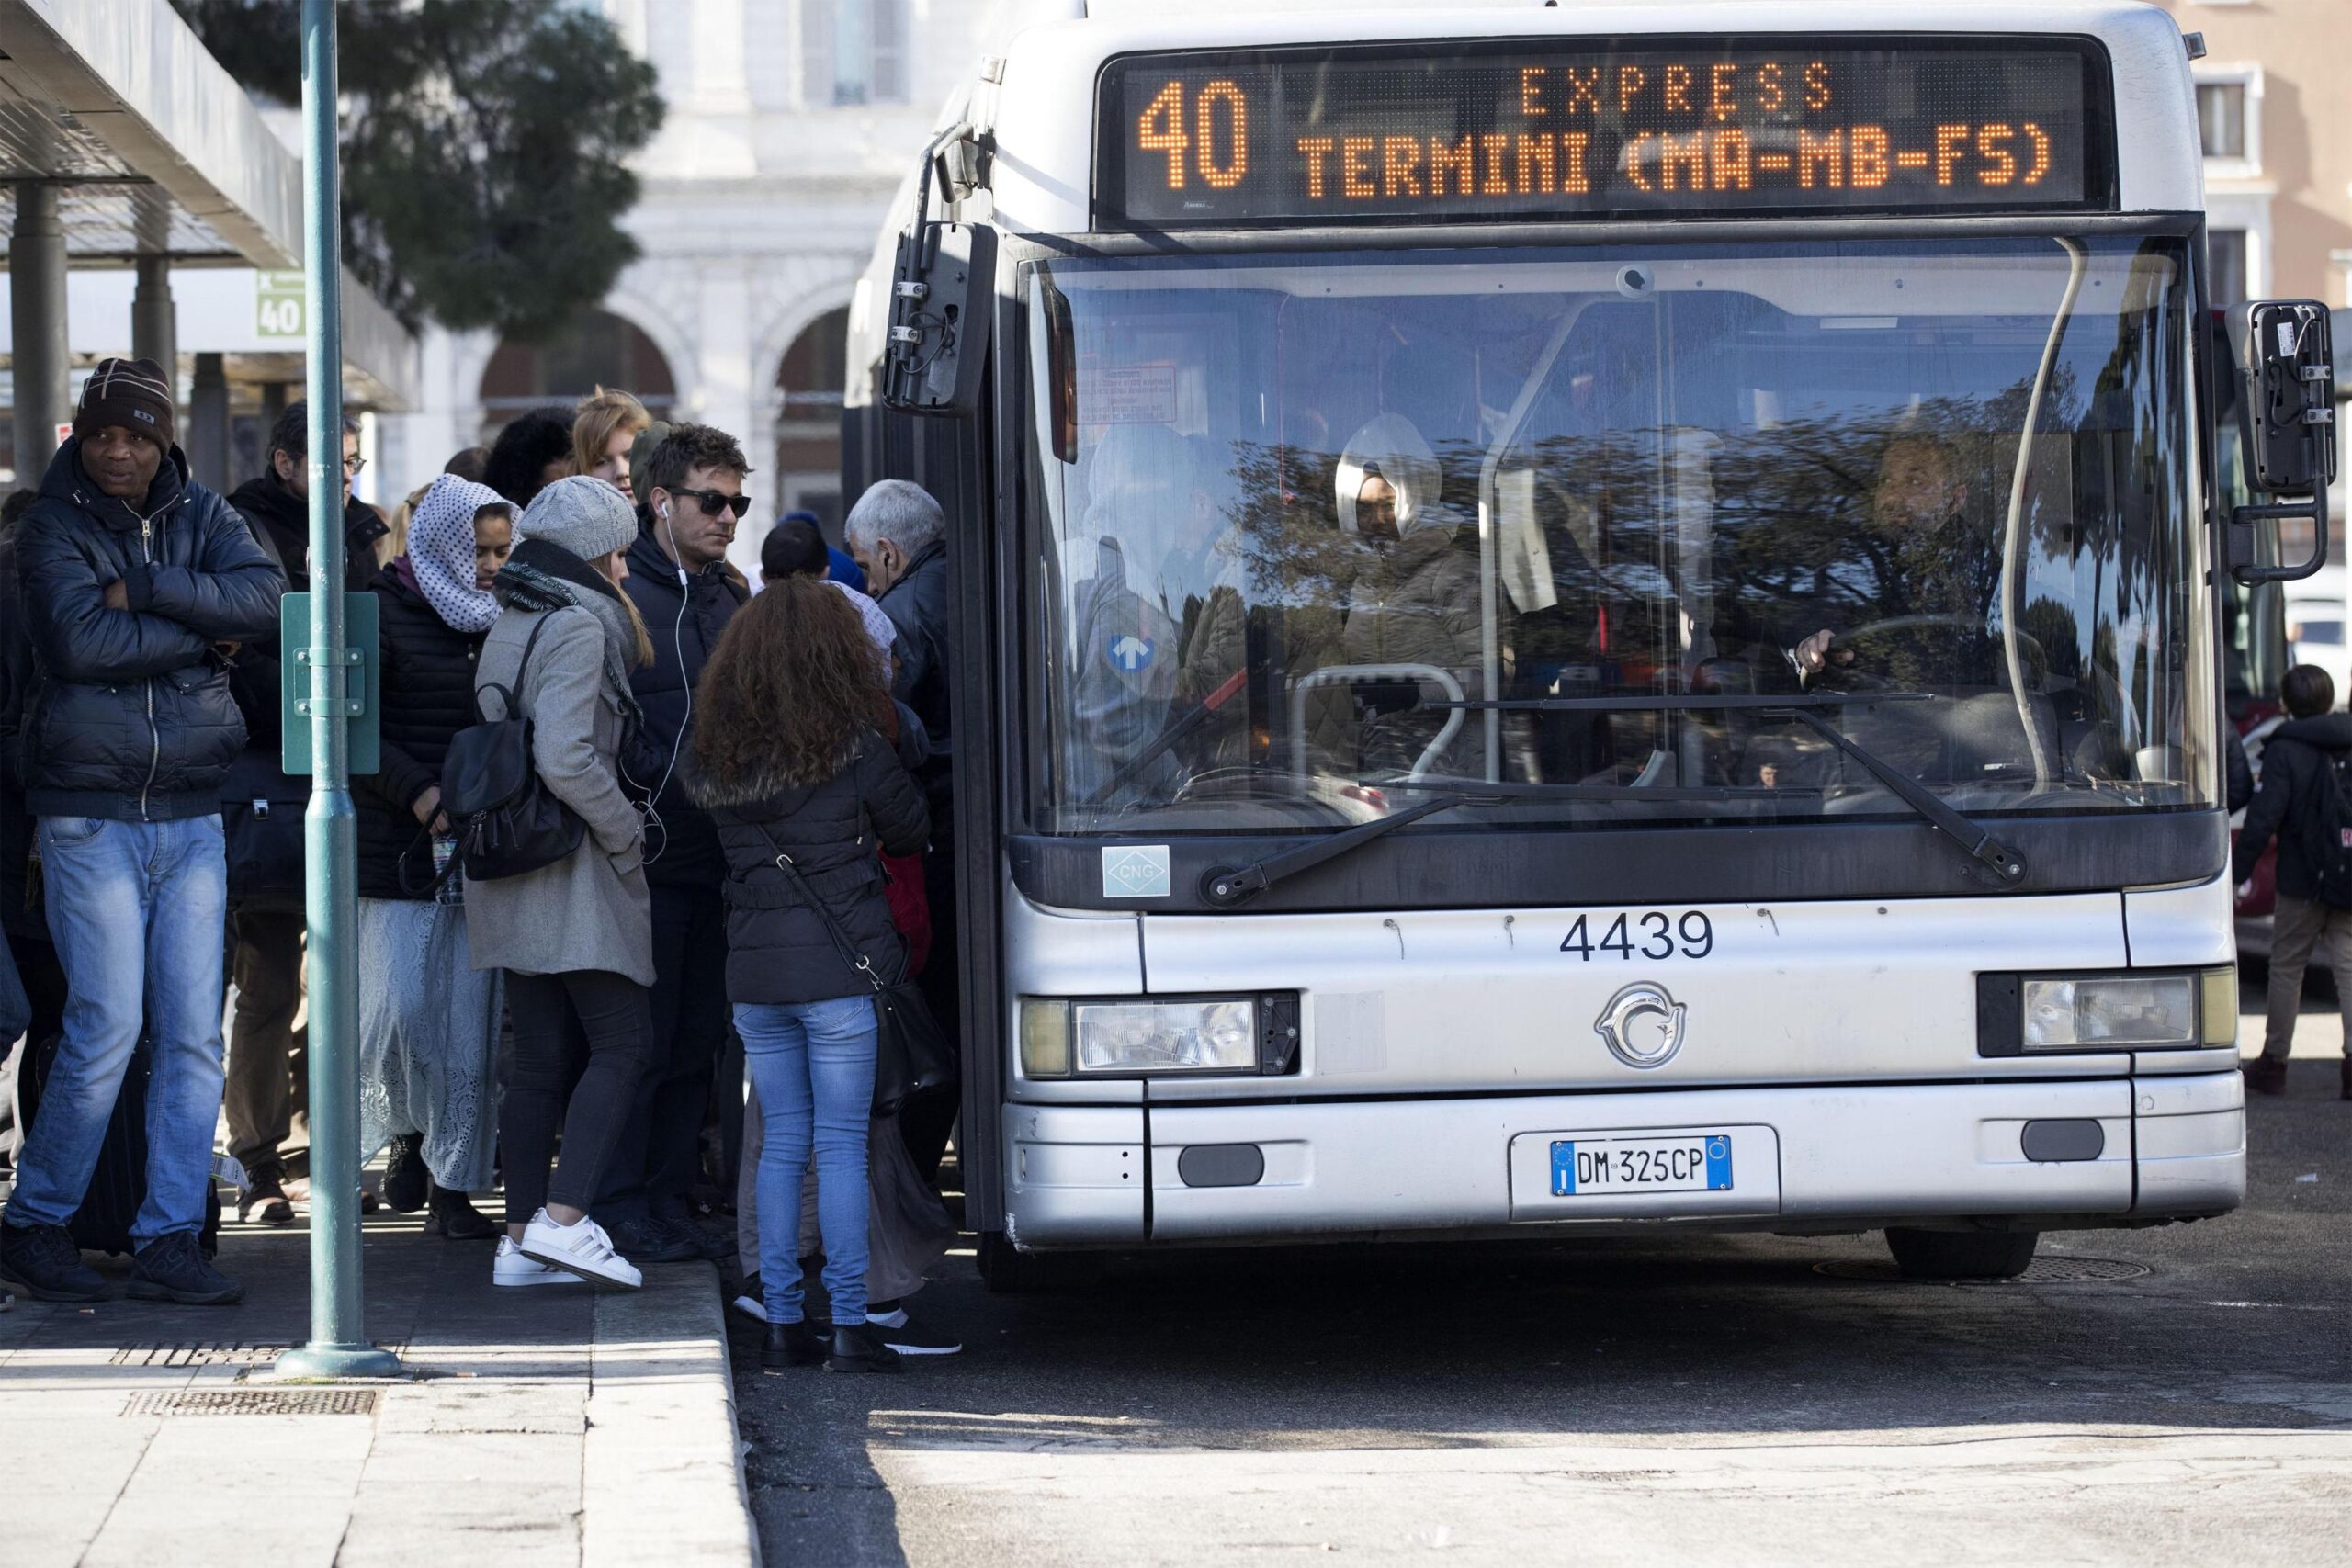 Gente in attesa a una fermata dell'autobus alla stazione Termini, Roma, 8 marzo 2018.
ANSA/MASSIMO PERCOSSI